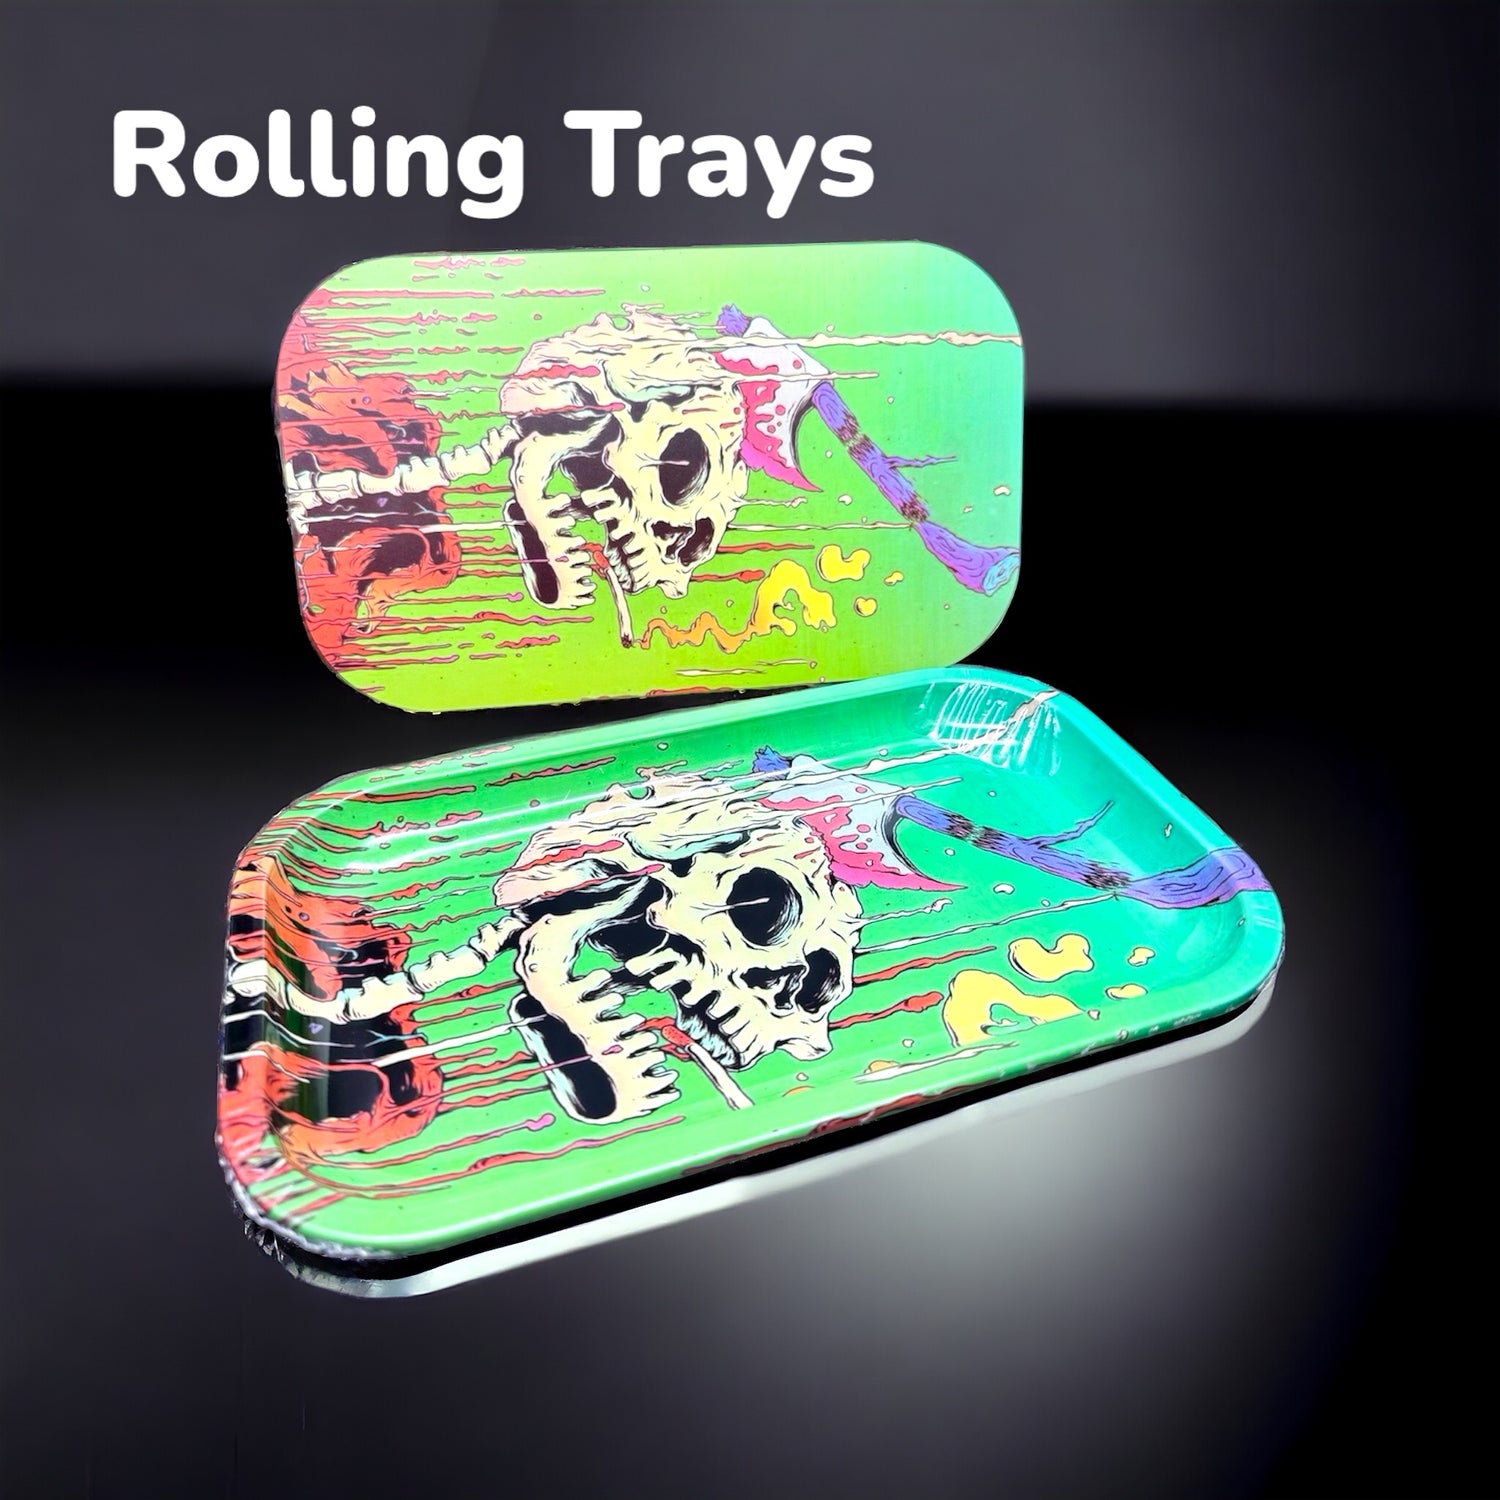 premium rolling trays 